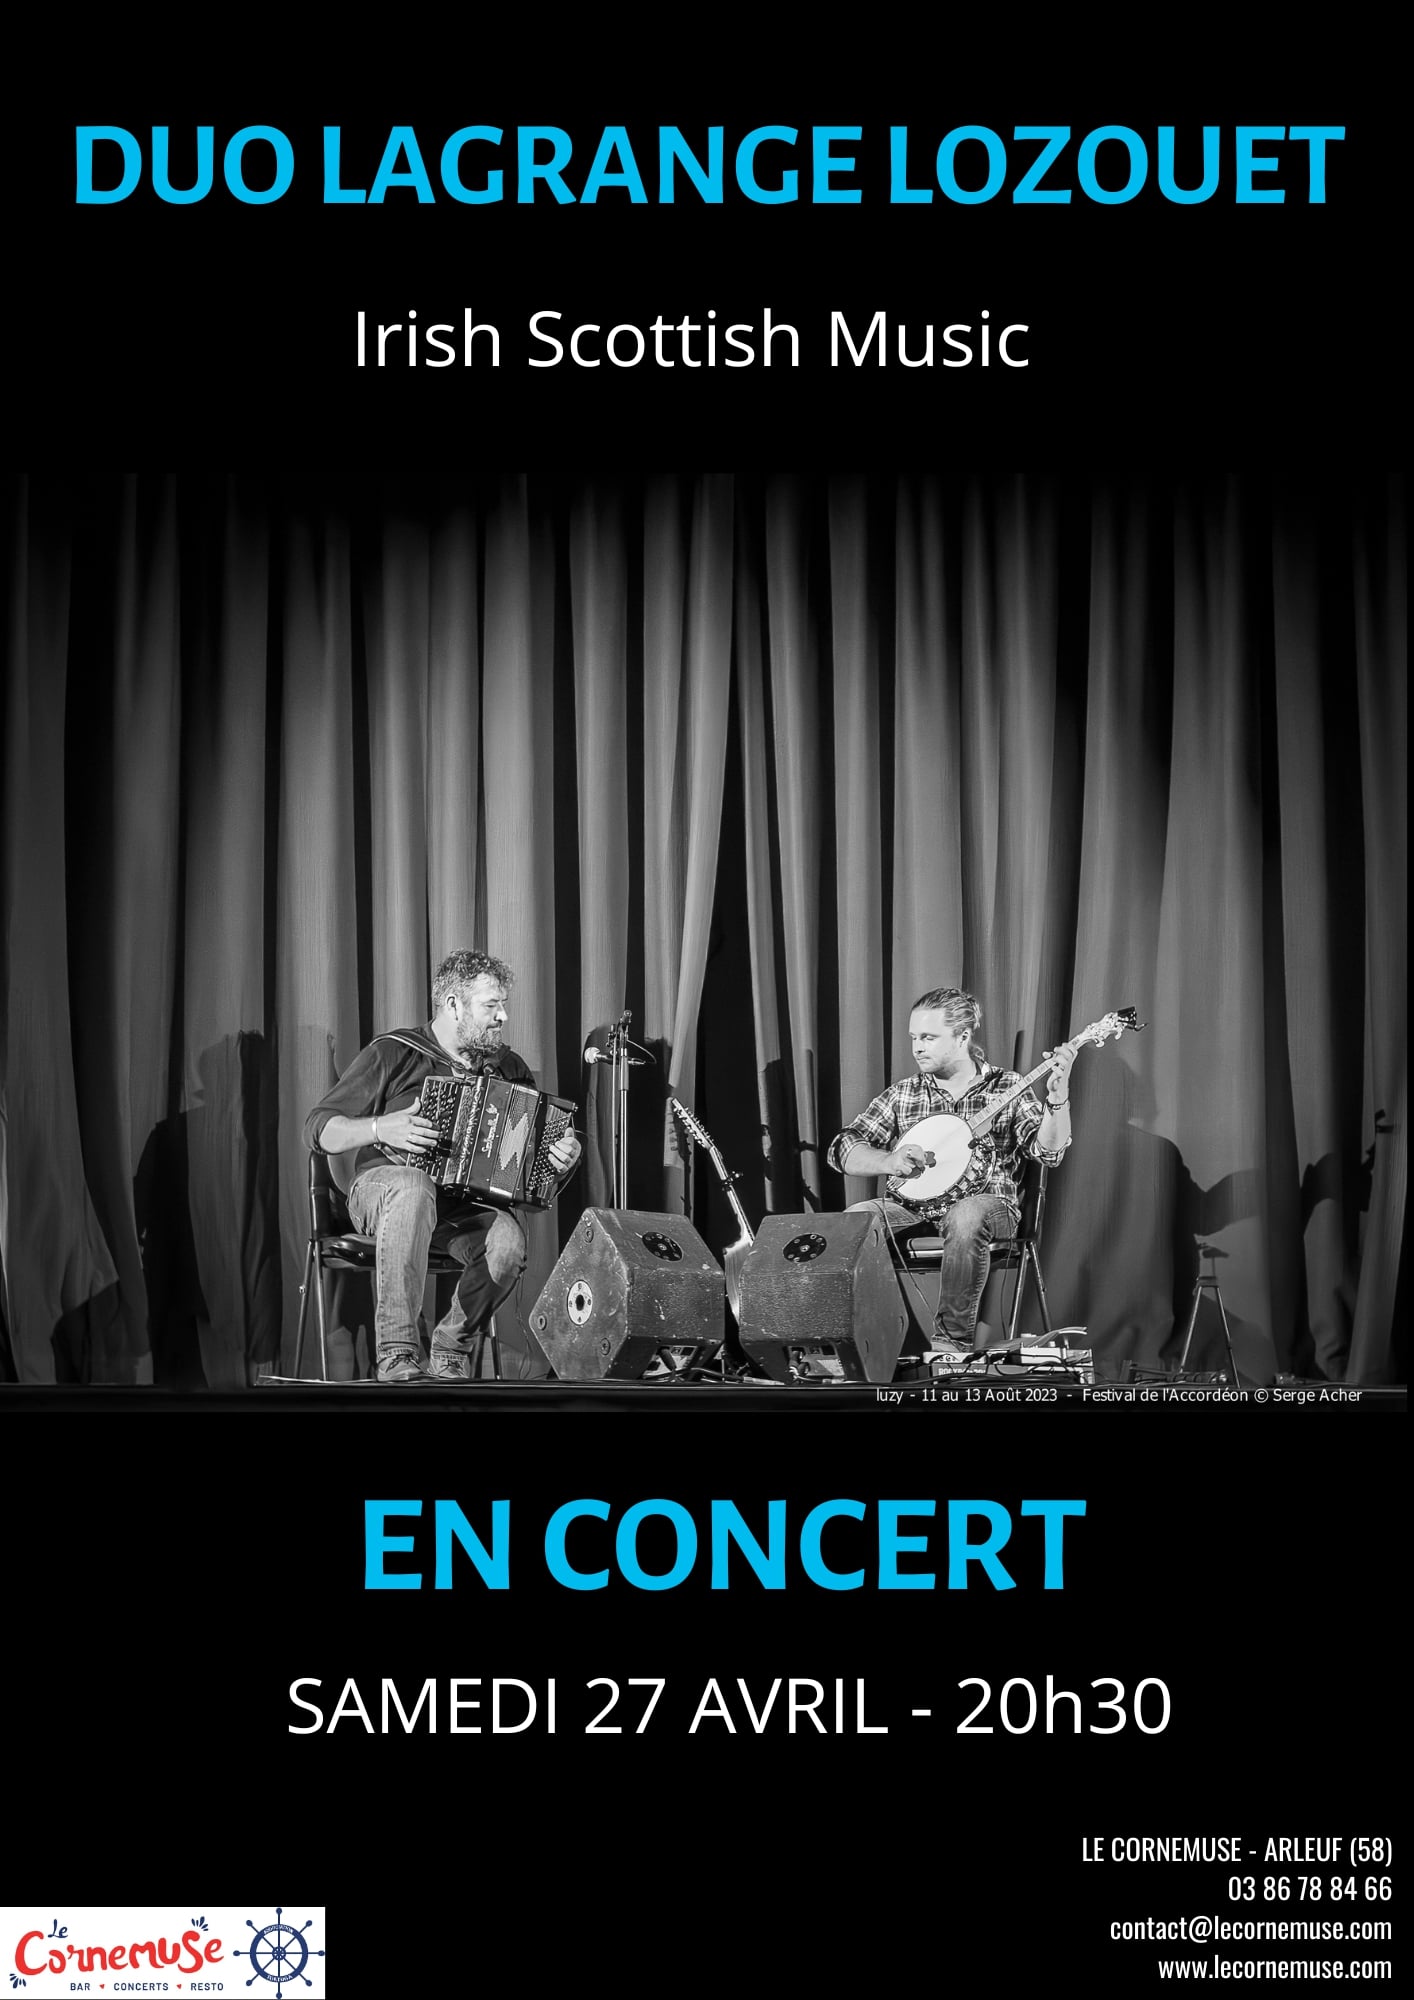 Duo Lagrange Lozouet Irish Scottish Music